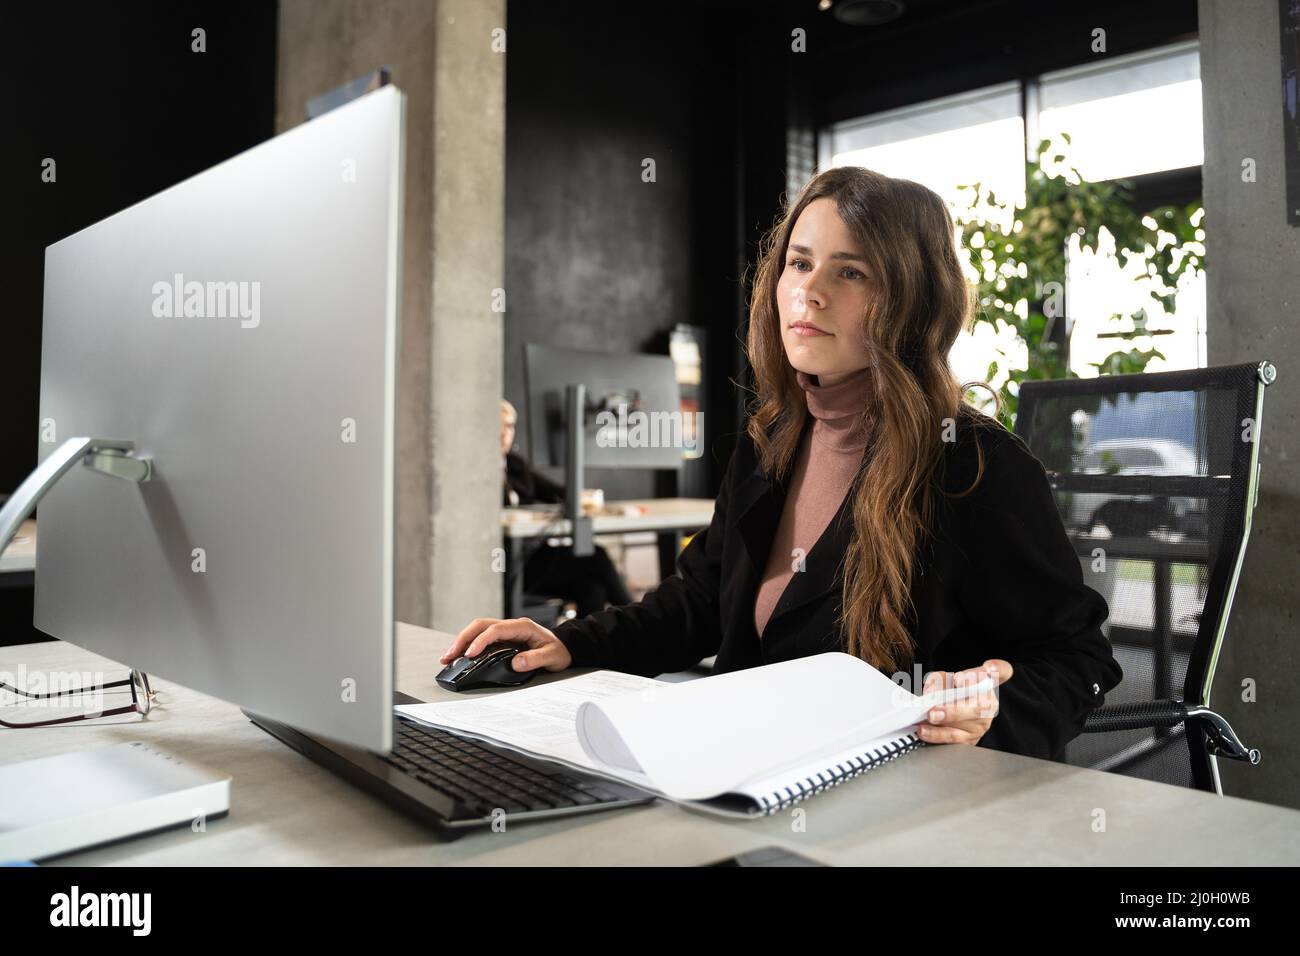 Design- und Architekturthema. Eine junge Architektin arbeitet in einem modernen Büro an einem Projekt mit Bauplänen am Computer Stockfoto